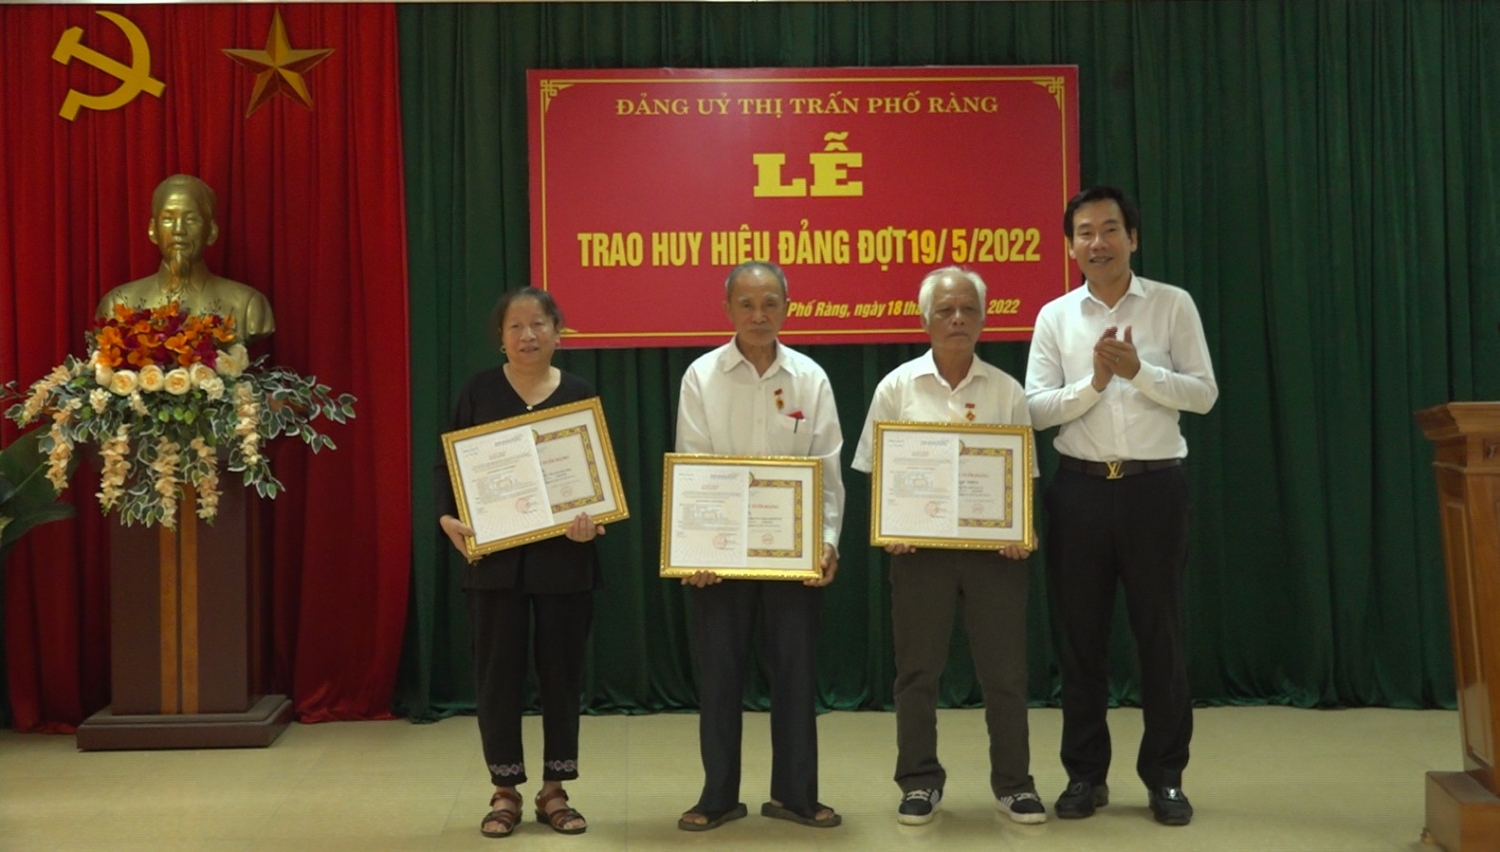 Đồng chí Dương Đức Huy Ủy viên BTV, Trưởng ban tuyên giáo Tỉnh ủy trao Huy hiệu đảng cho các đảng viên tại Đảng bộ thị trấn Phố Ràng